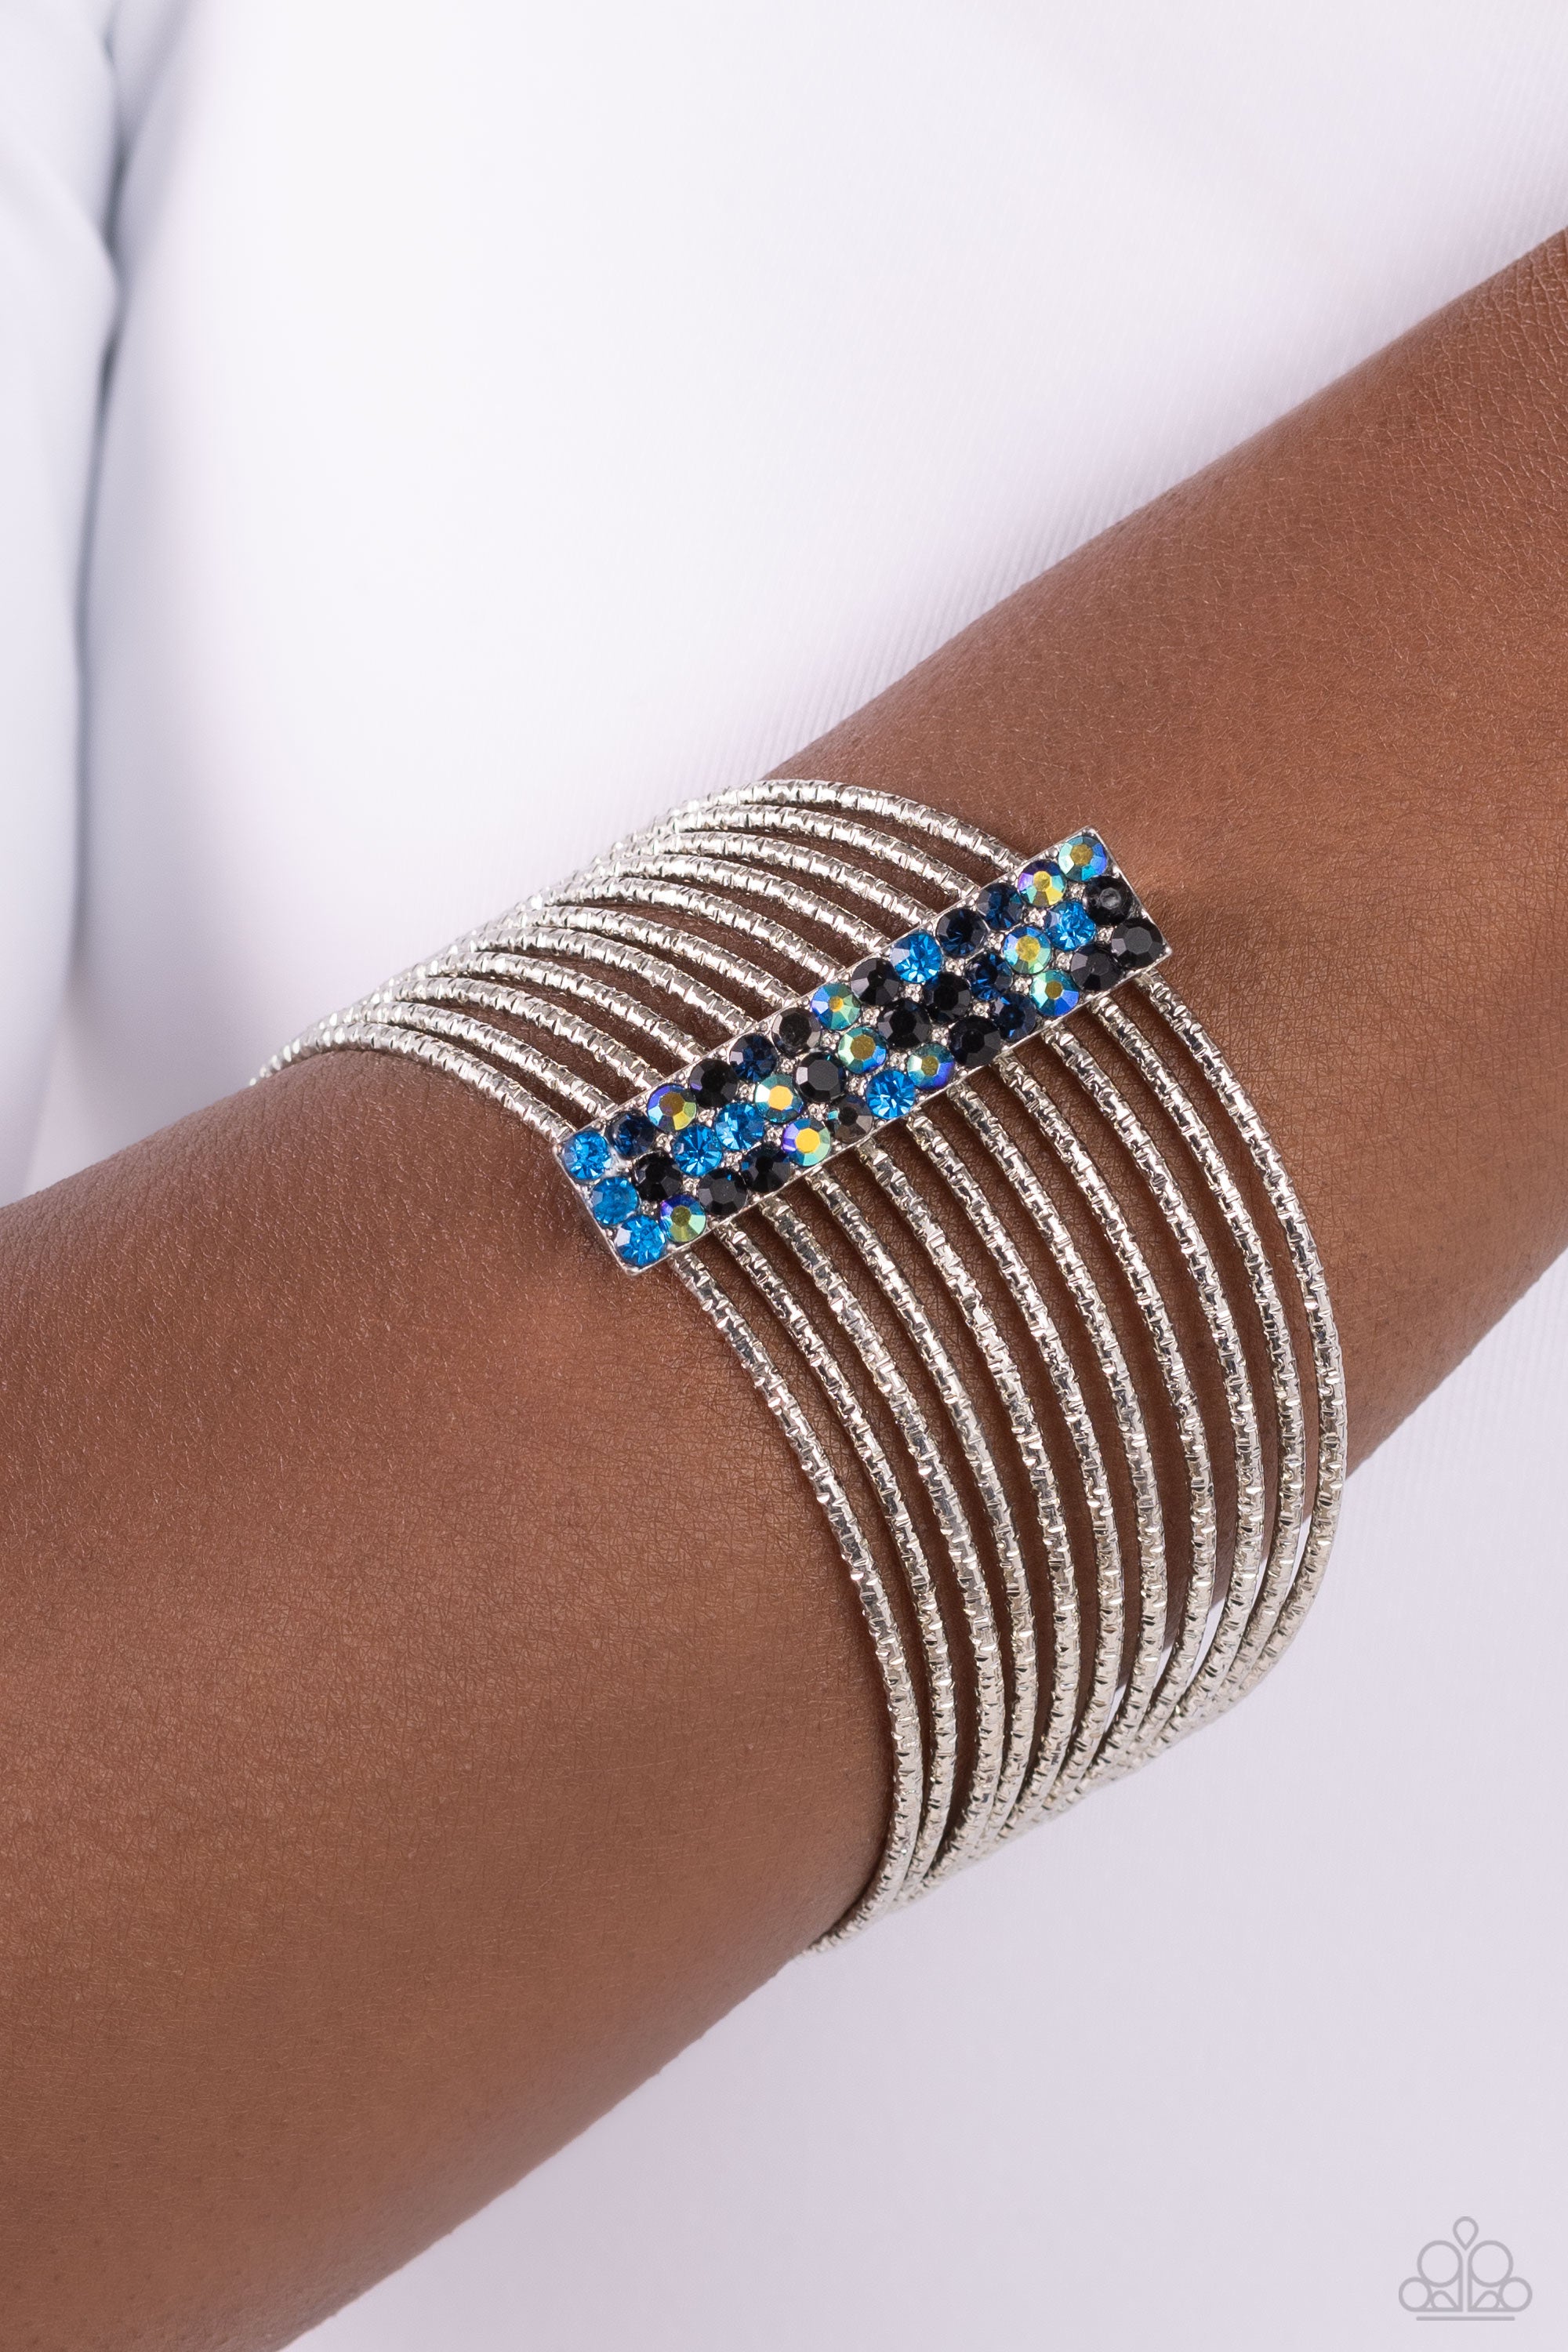 Life is Good Word Bead Bracelets / Multi Color Three Camp Bracelets – Just  Bead It